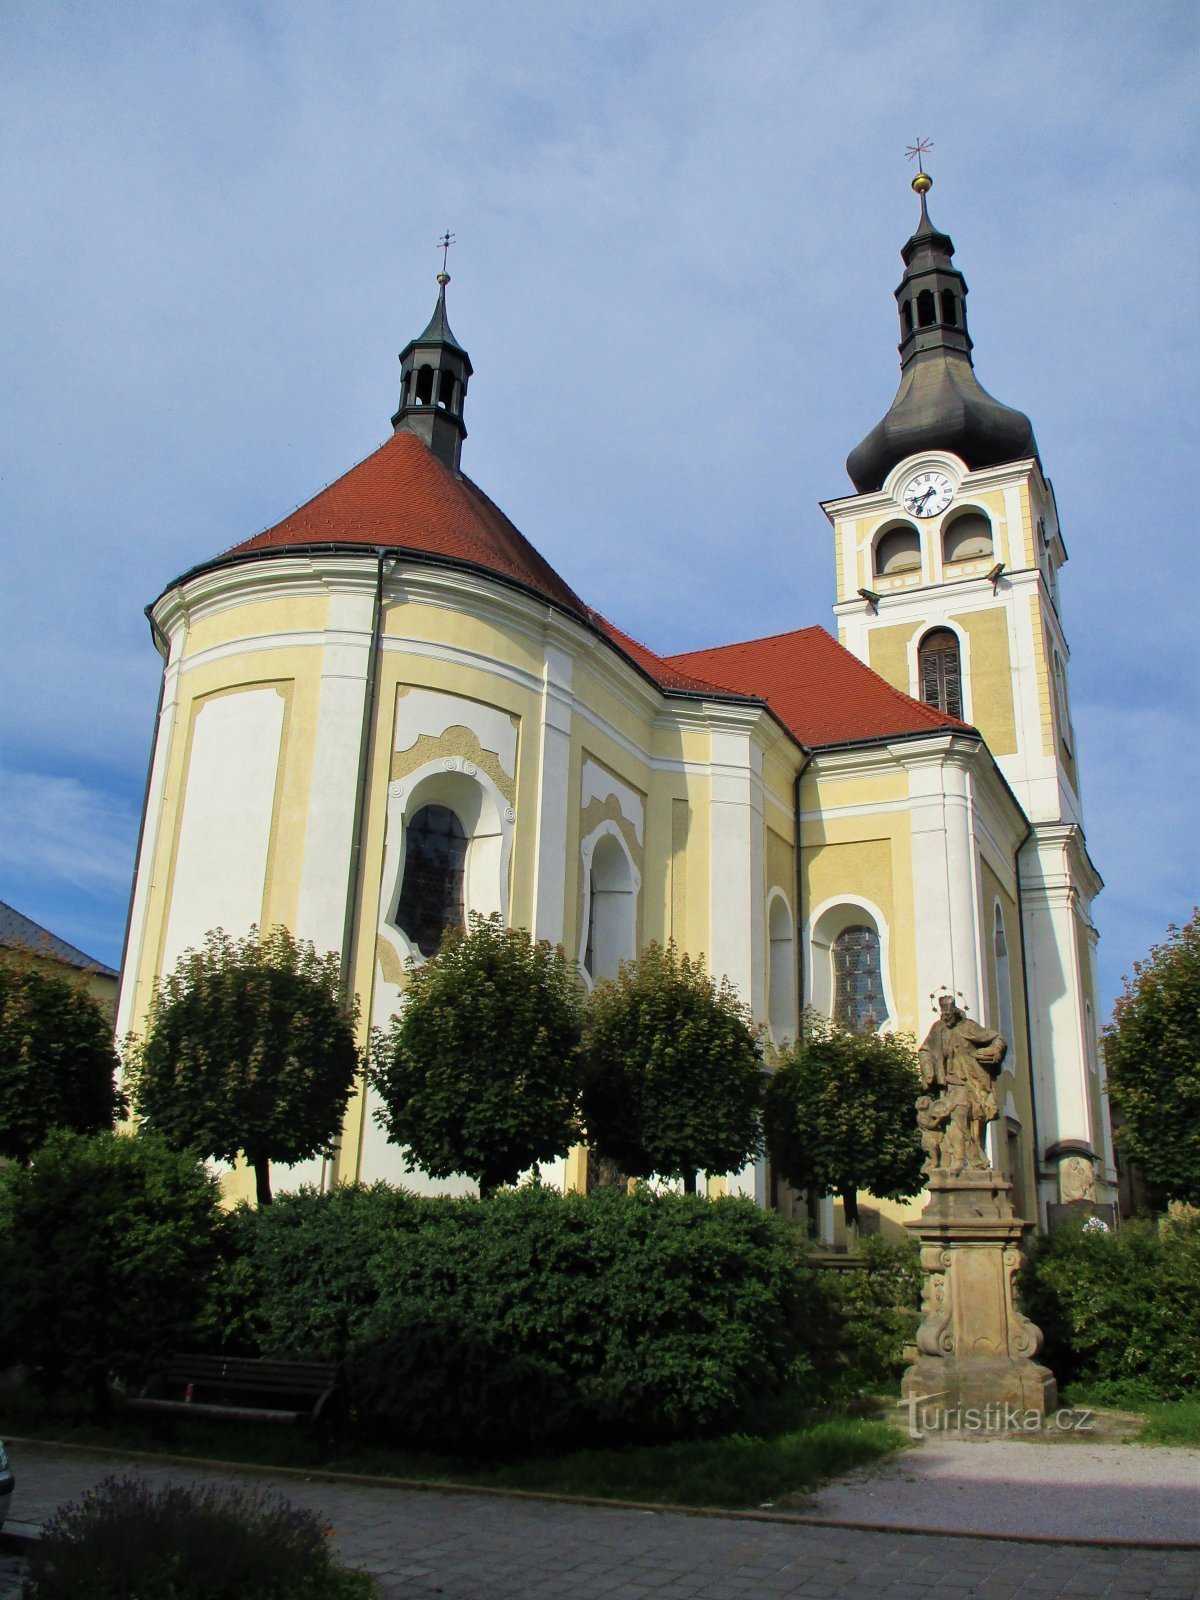 Iglesia de la Natividad de la Virgen María (Hořice, 26.7.2020/XNUMX/XNUMX)